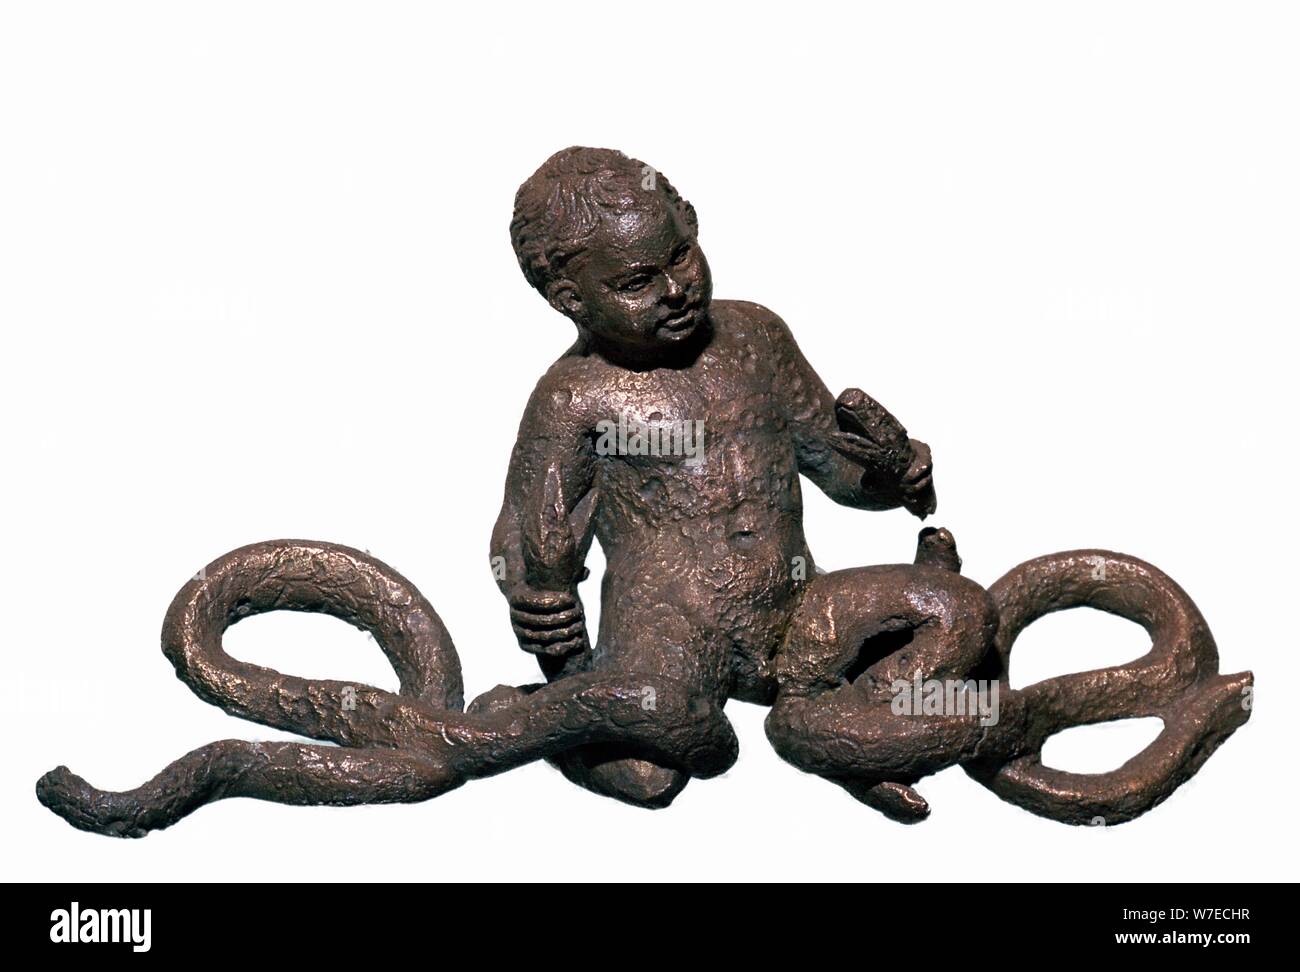 Estatuilla Romana de Hércules estrangulando a dos serpientes. Artista: Desconocido Foto de stock